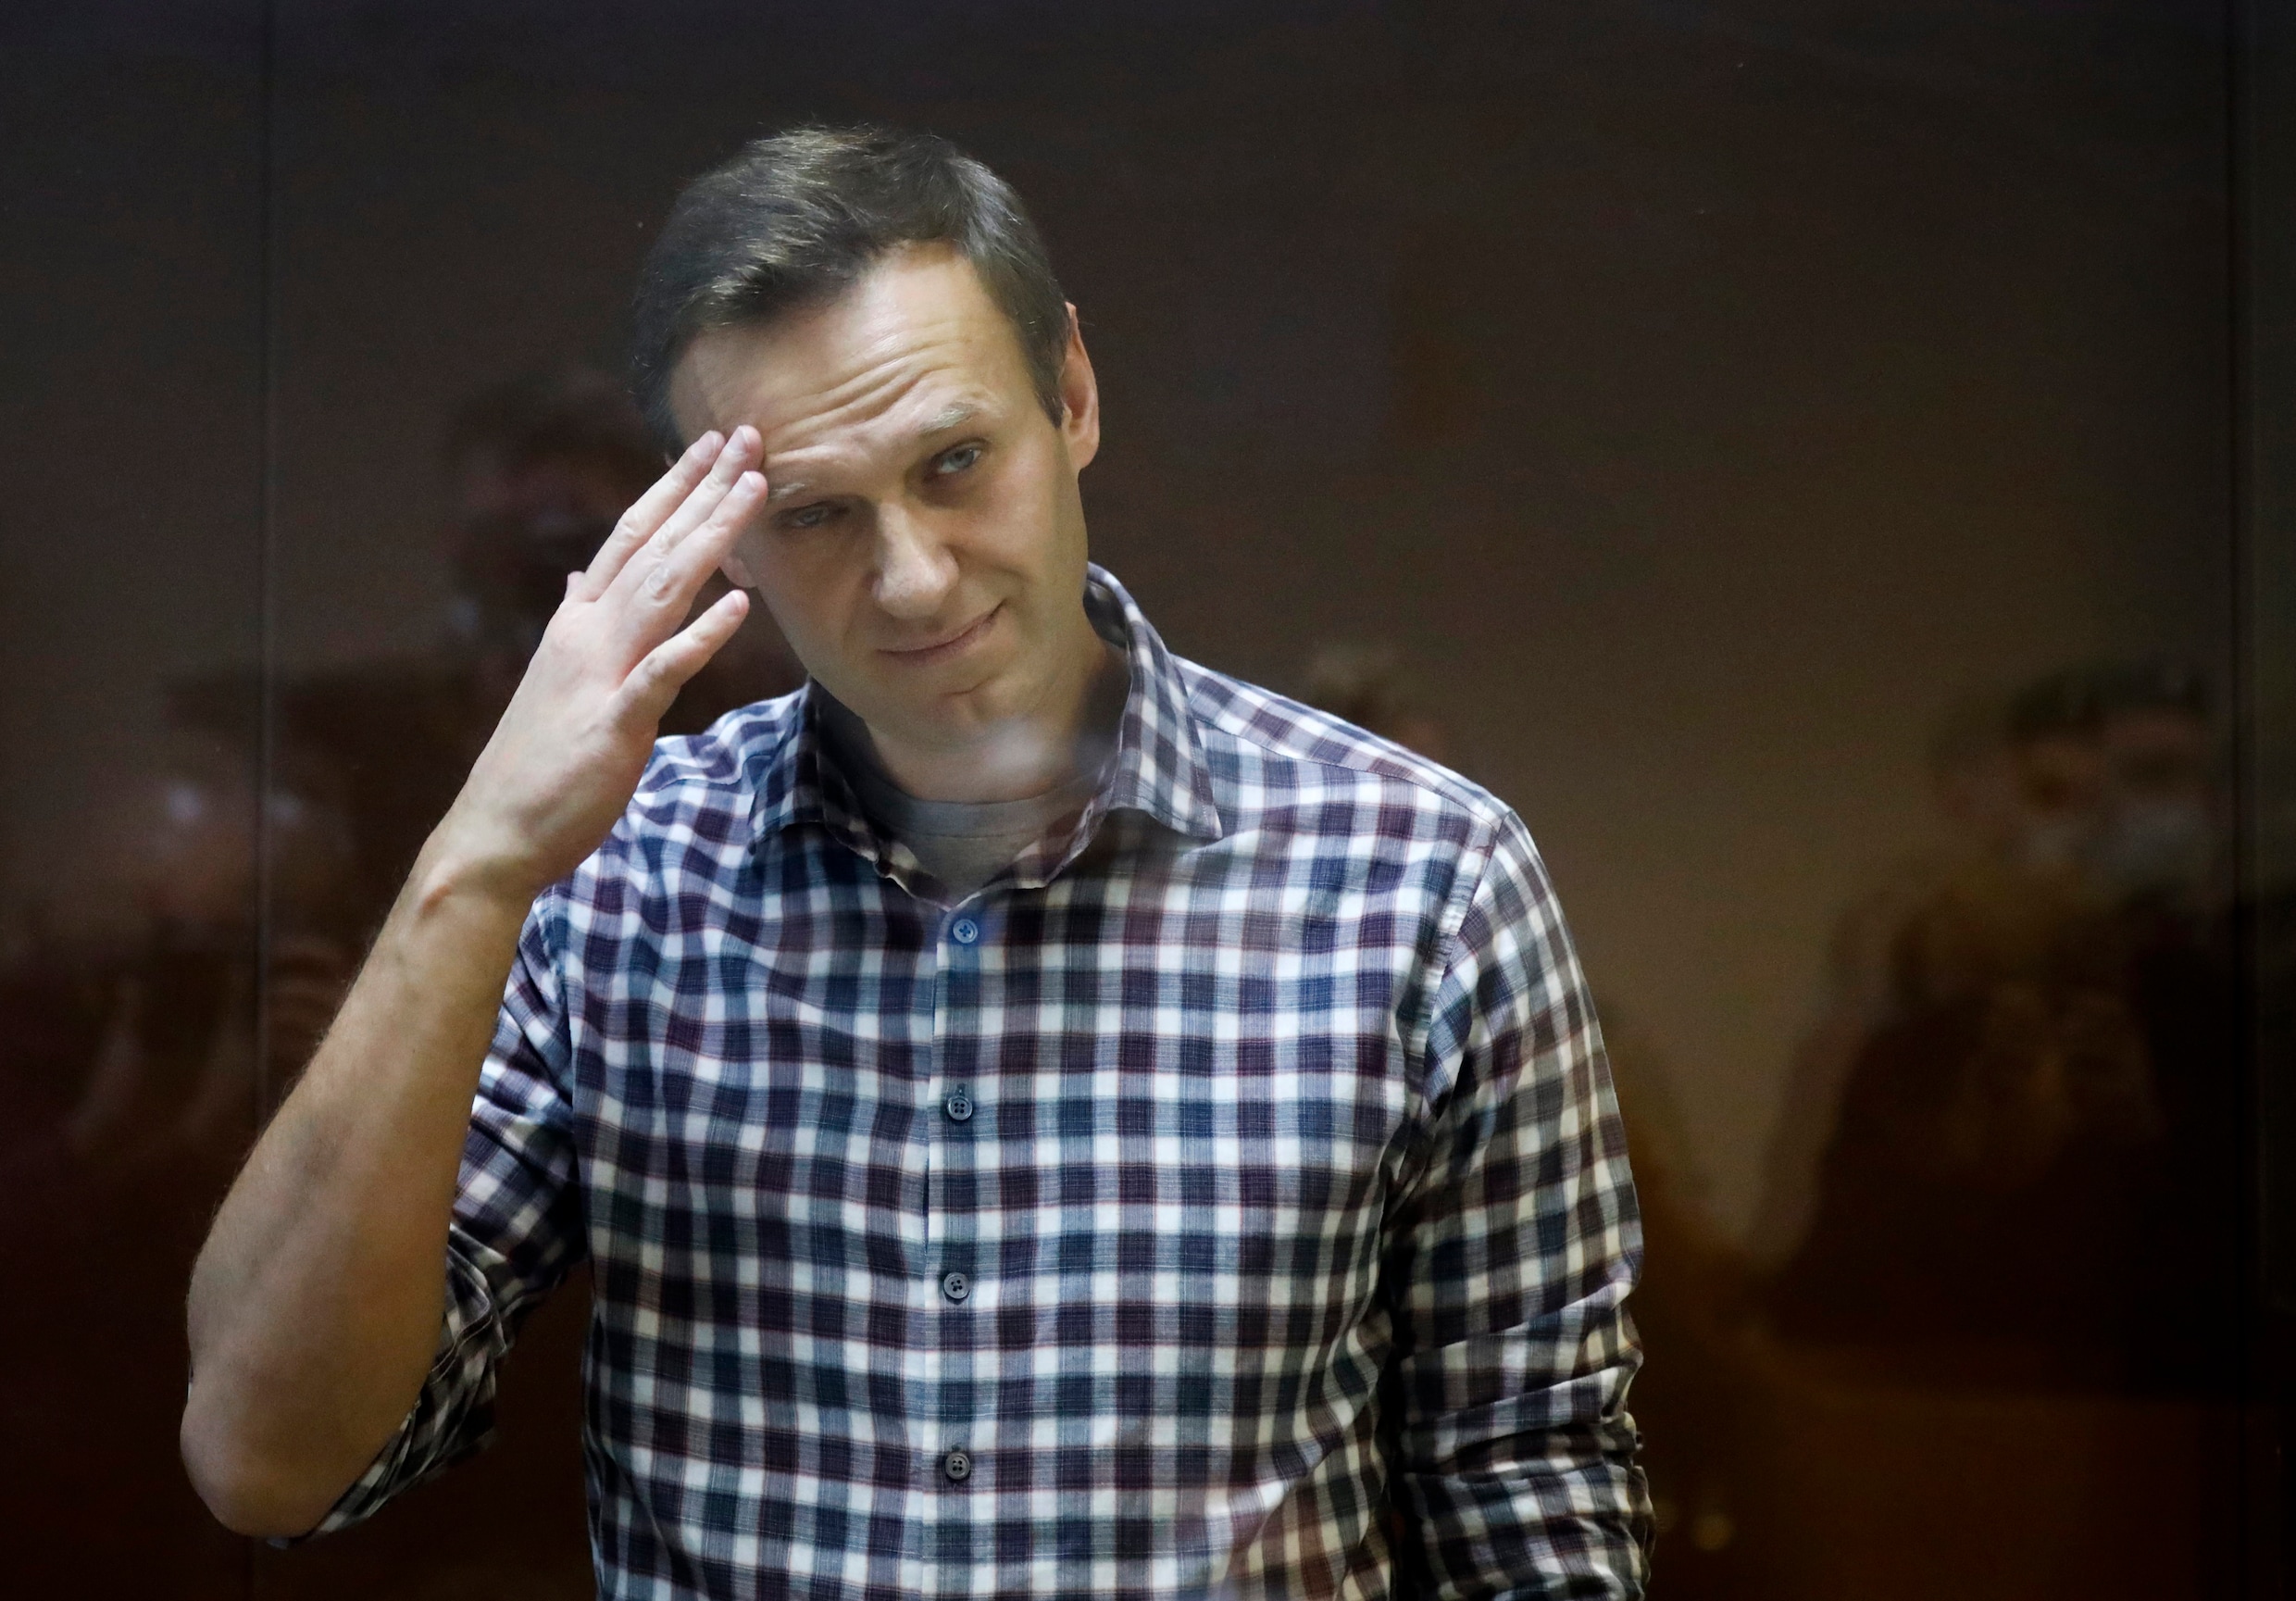 ‘Na novitsjok is kalium niet eng’: een onthutsende inkijk in het strafkamp van Aleksej Navalny